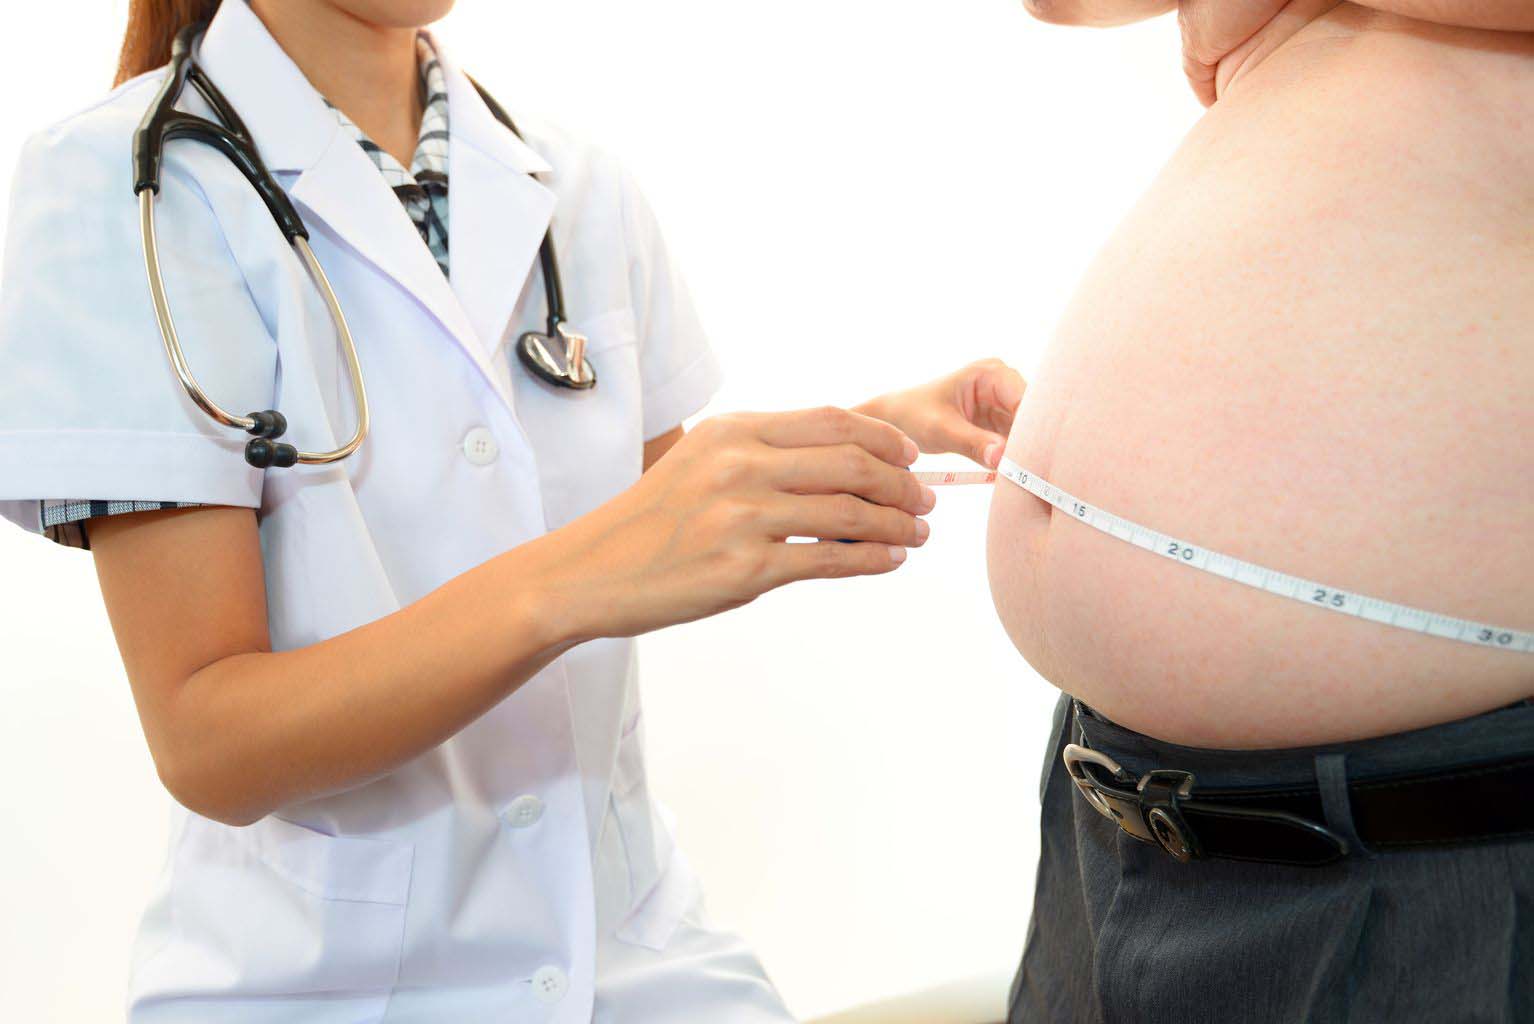 obezitenin neden oldugu saglik sorunlari nelerdir obezitenin neden oldugu hastaliklar obezitenin yol actigi saglik problemleri nelerdir obezite cerrahisi obezite ameliyati yapan hastane obezite klinigi bursa obezite cerrahisi obezite testi